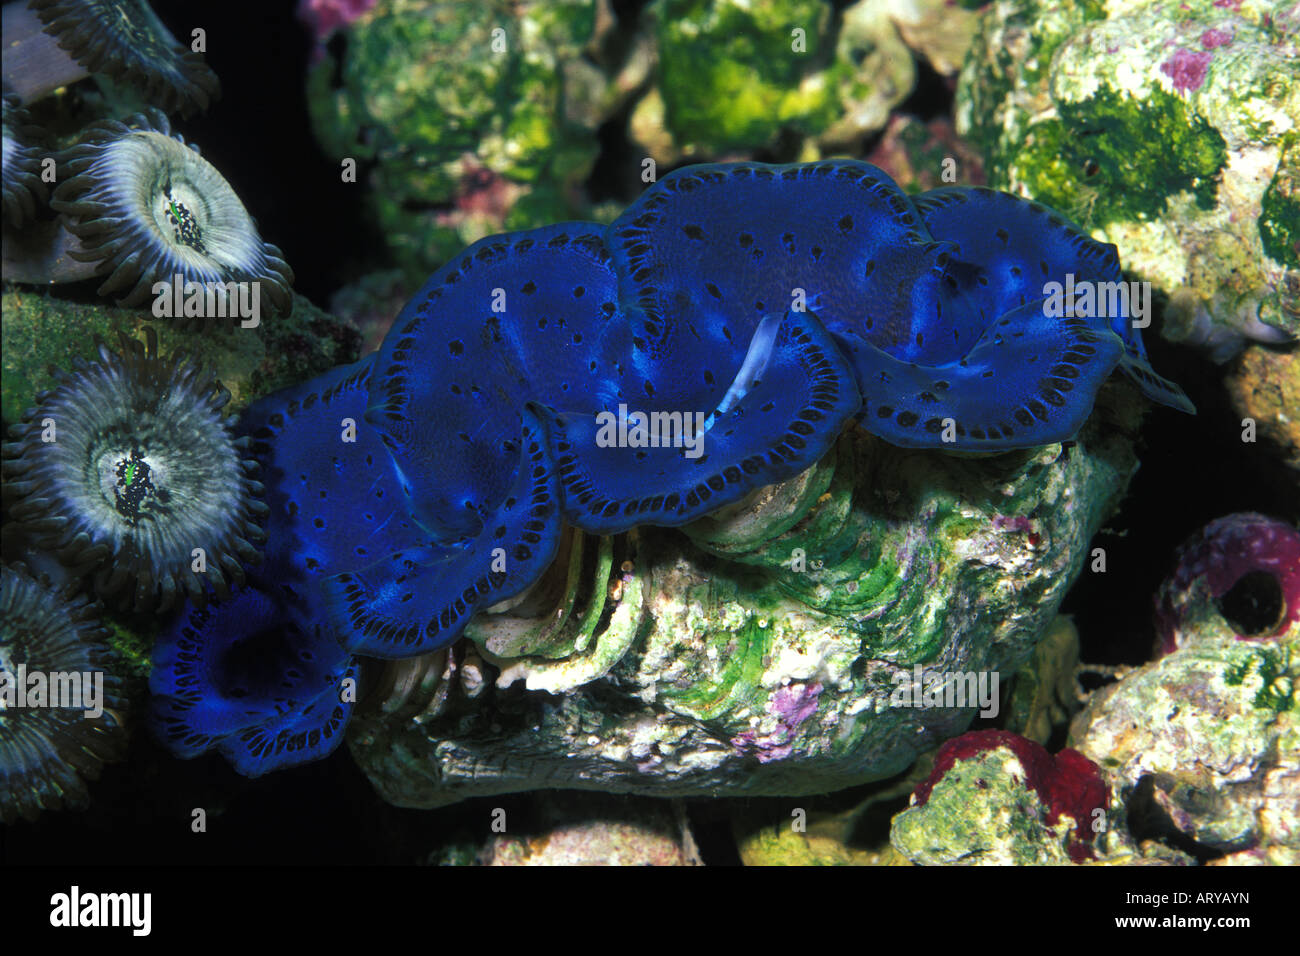 Les bénitiers aux couleurs vives est l'une des nombreuses créatures marines uniques trouvés sur l'affichage à l'Aquarium de Waikiki d'Oahu. Banque D'Images